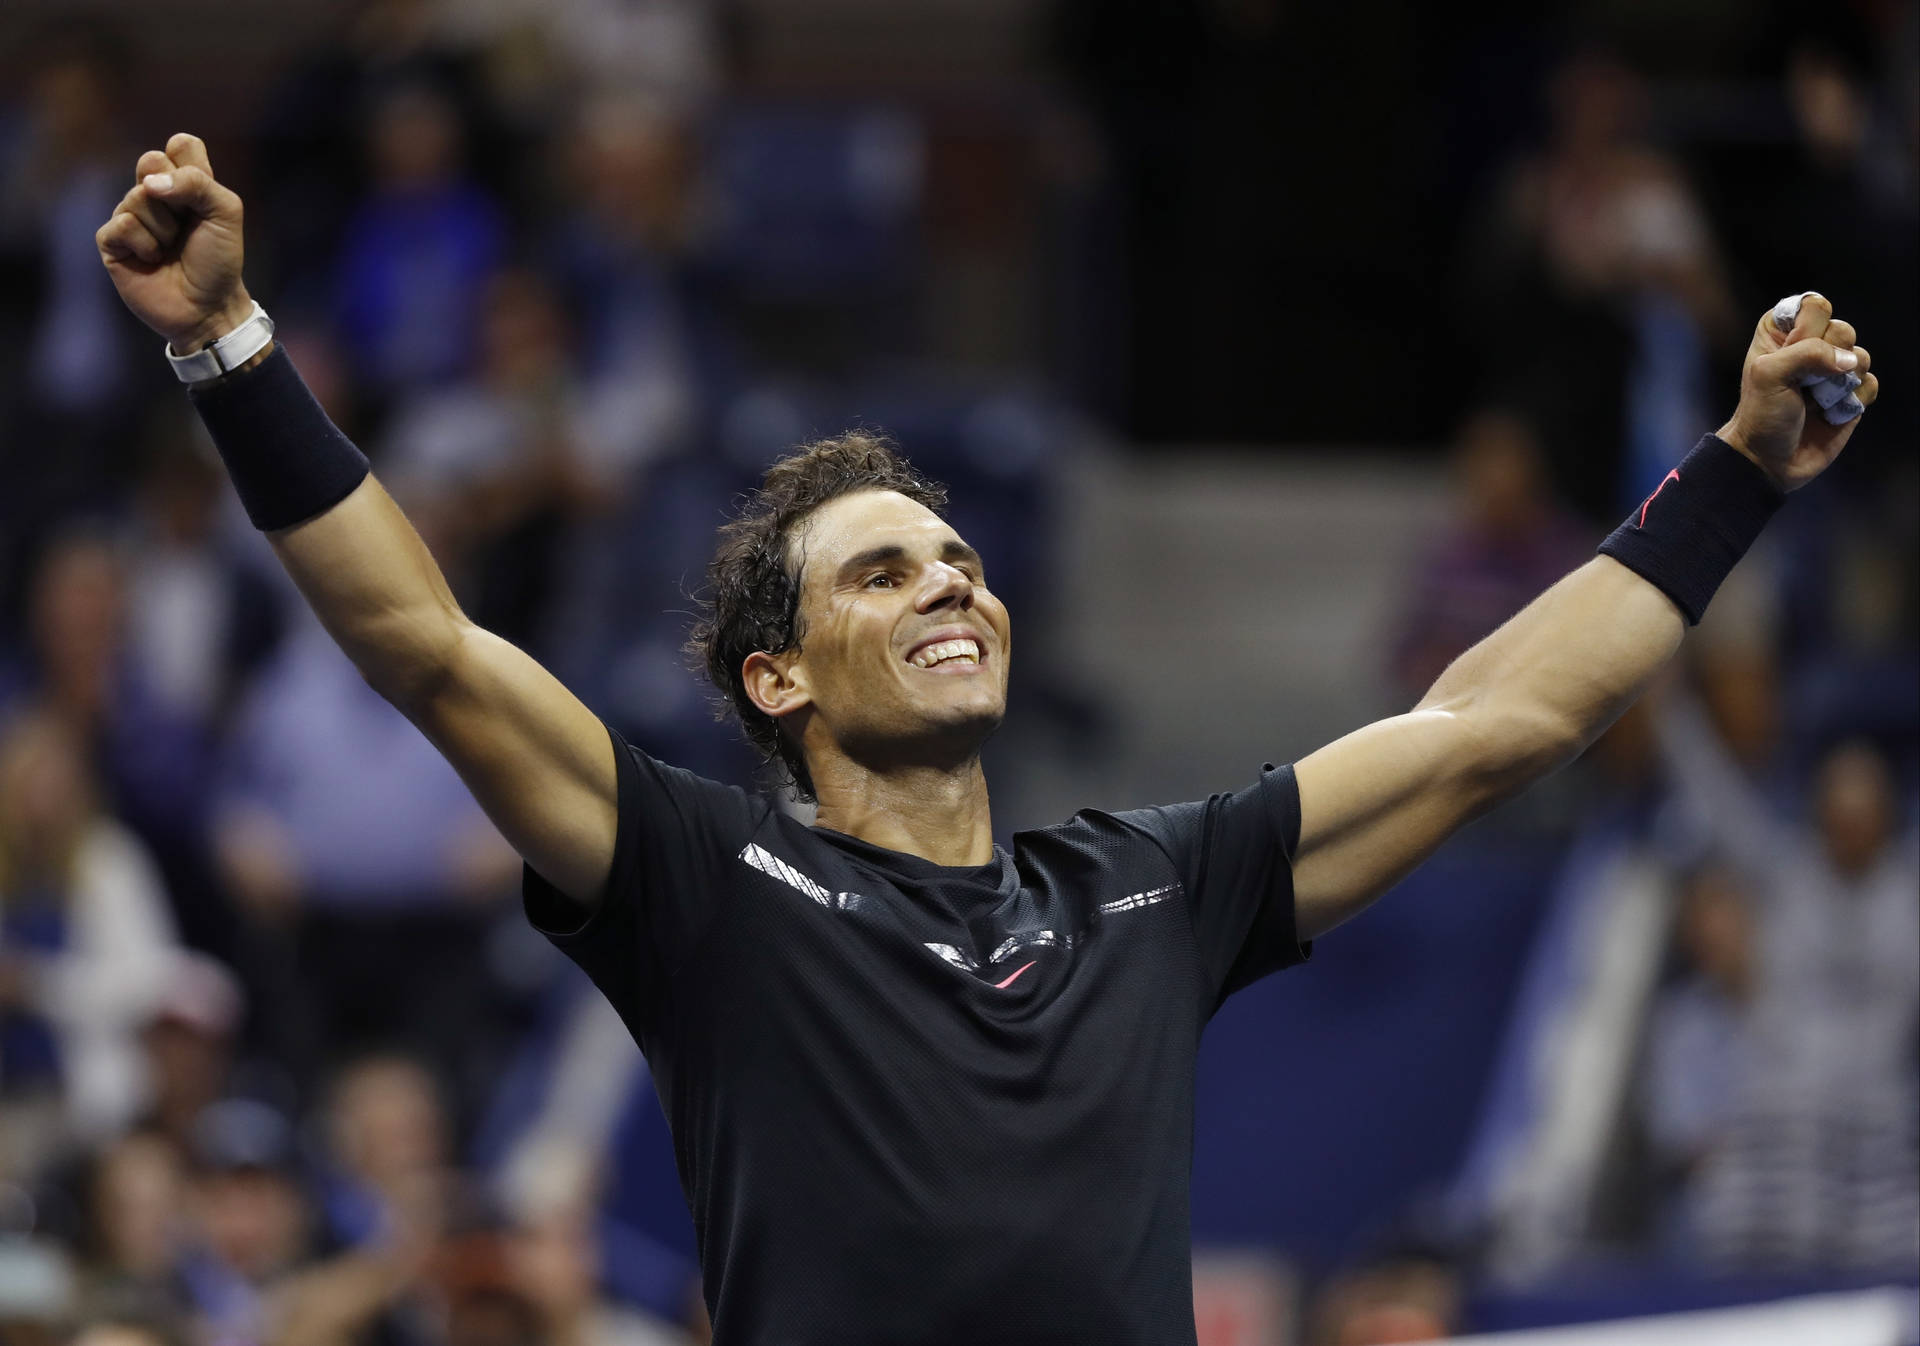 Rafael Nadal Tennis Champion Pose